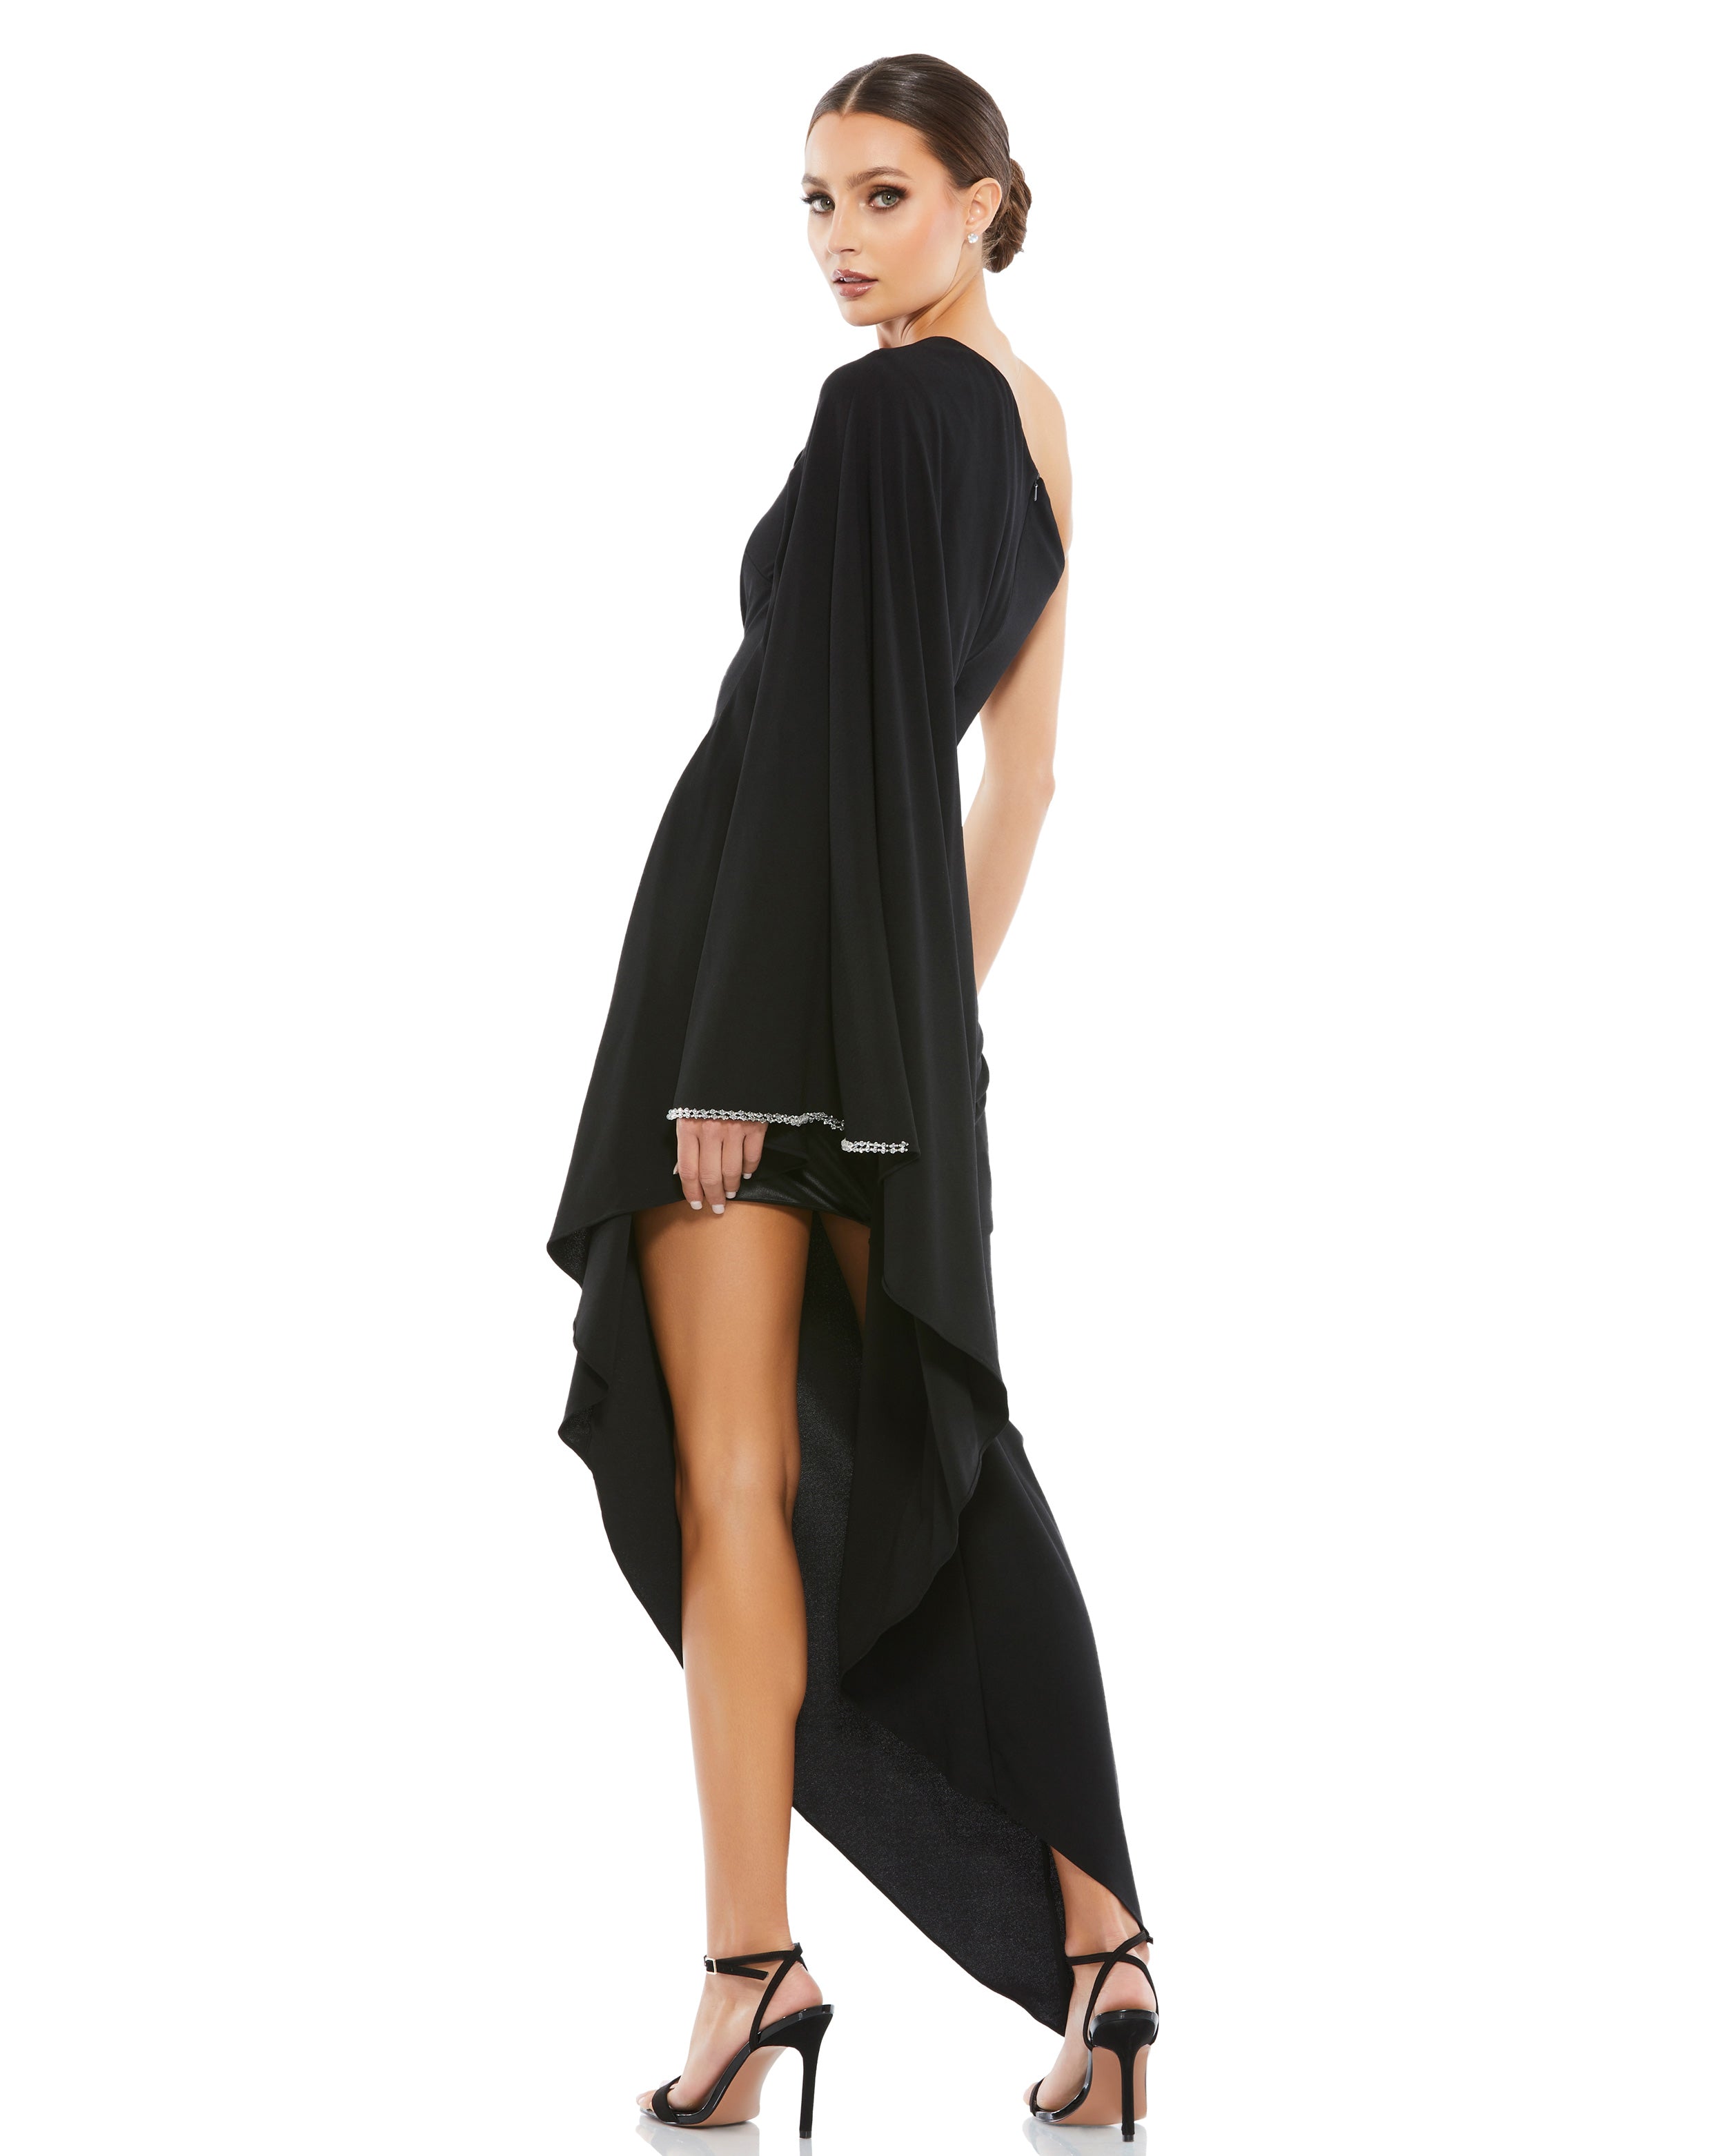 One Shoulder Asymmetrical Hem Flowy Dress – Mac Duggal